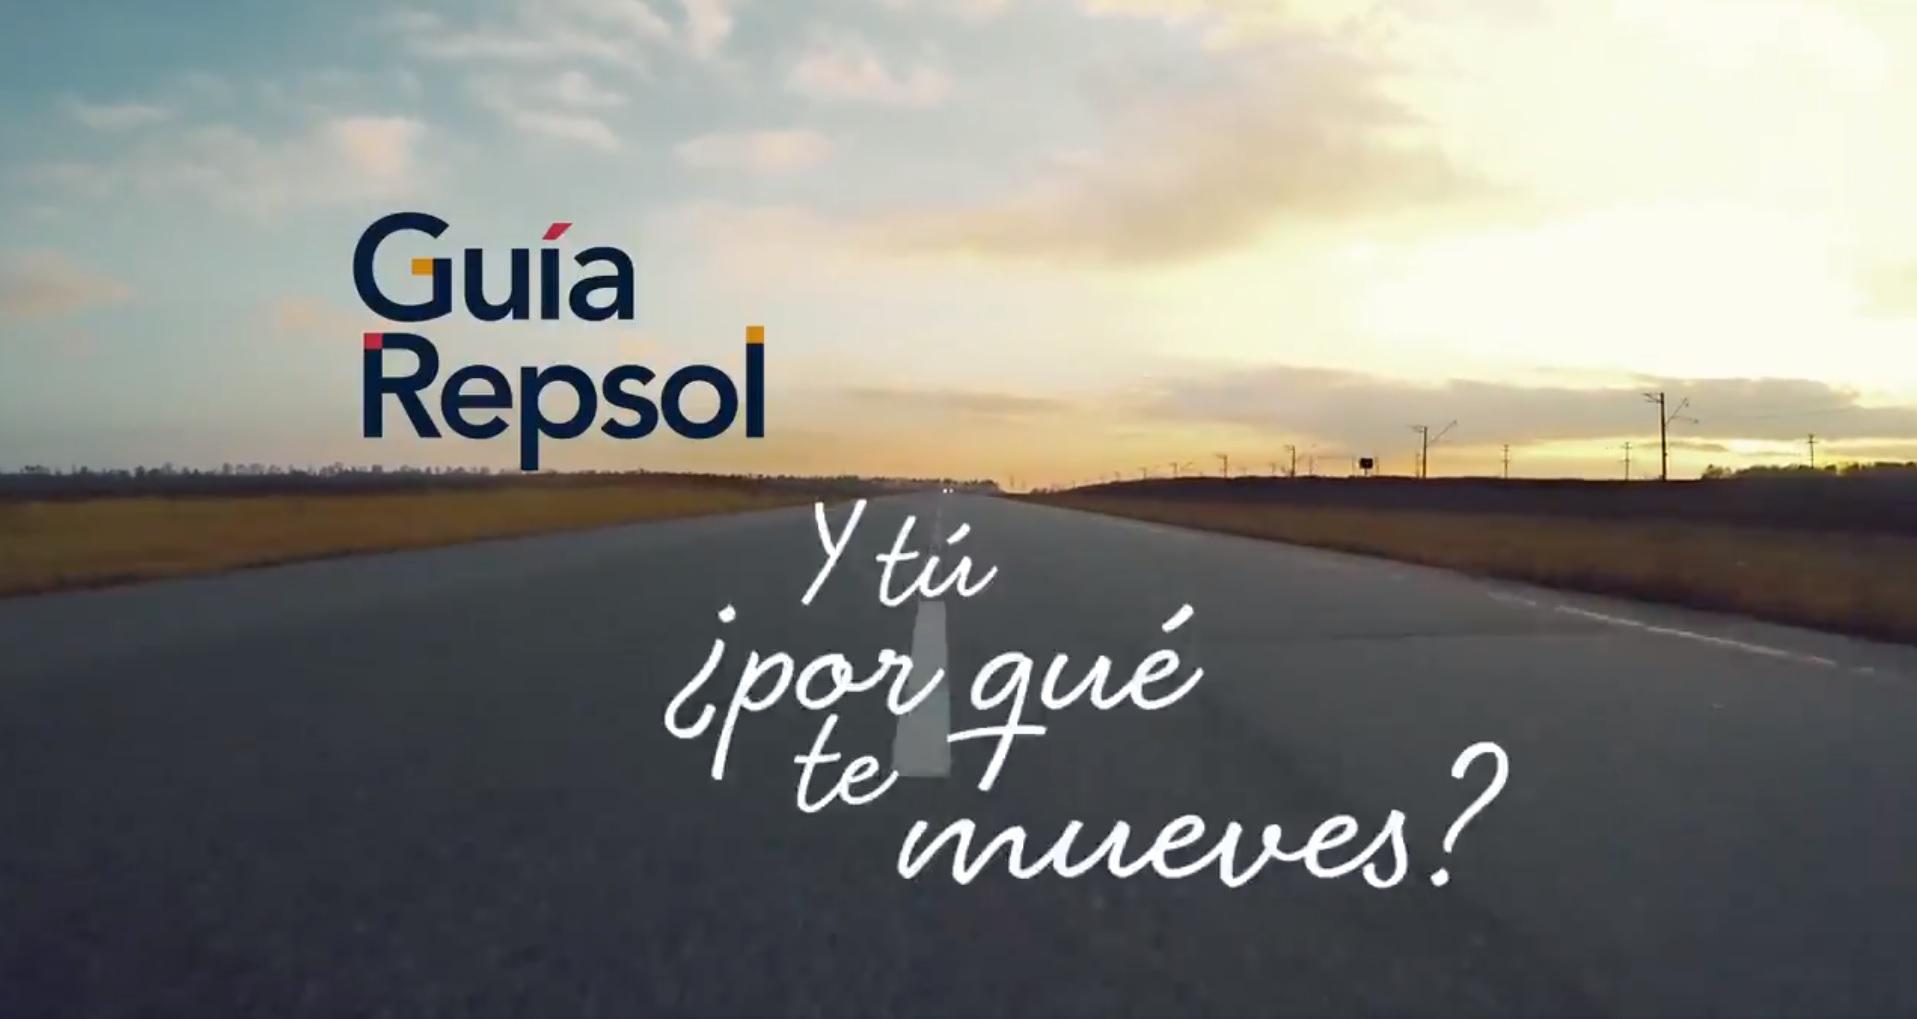 Imagen promocional de la campaña de Repsol